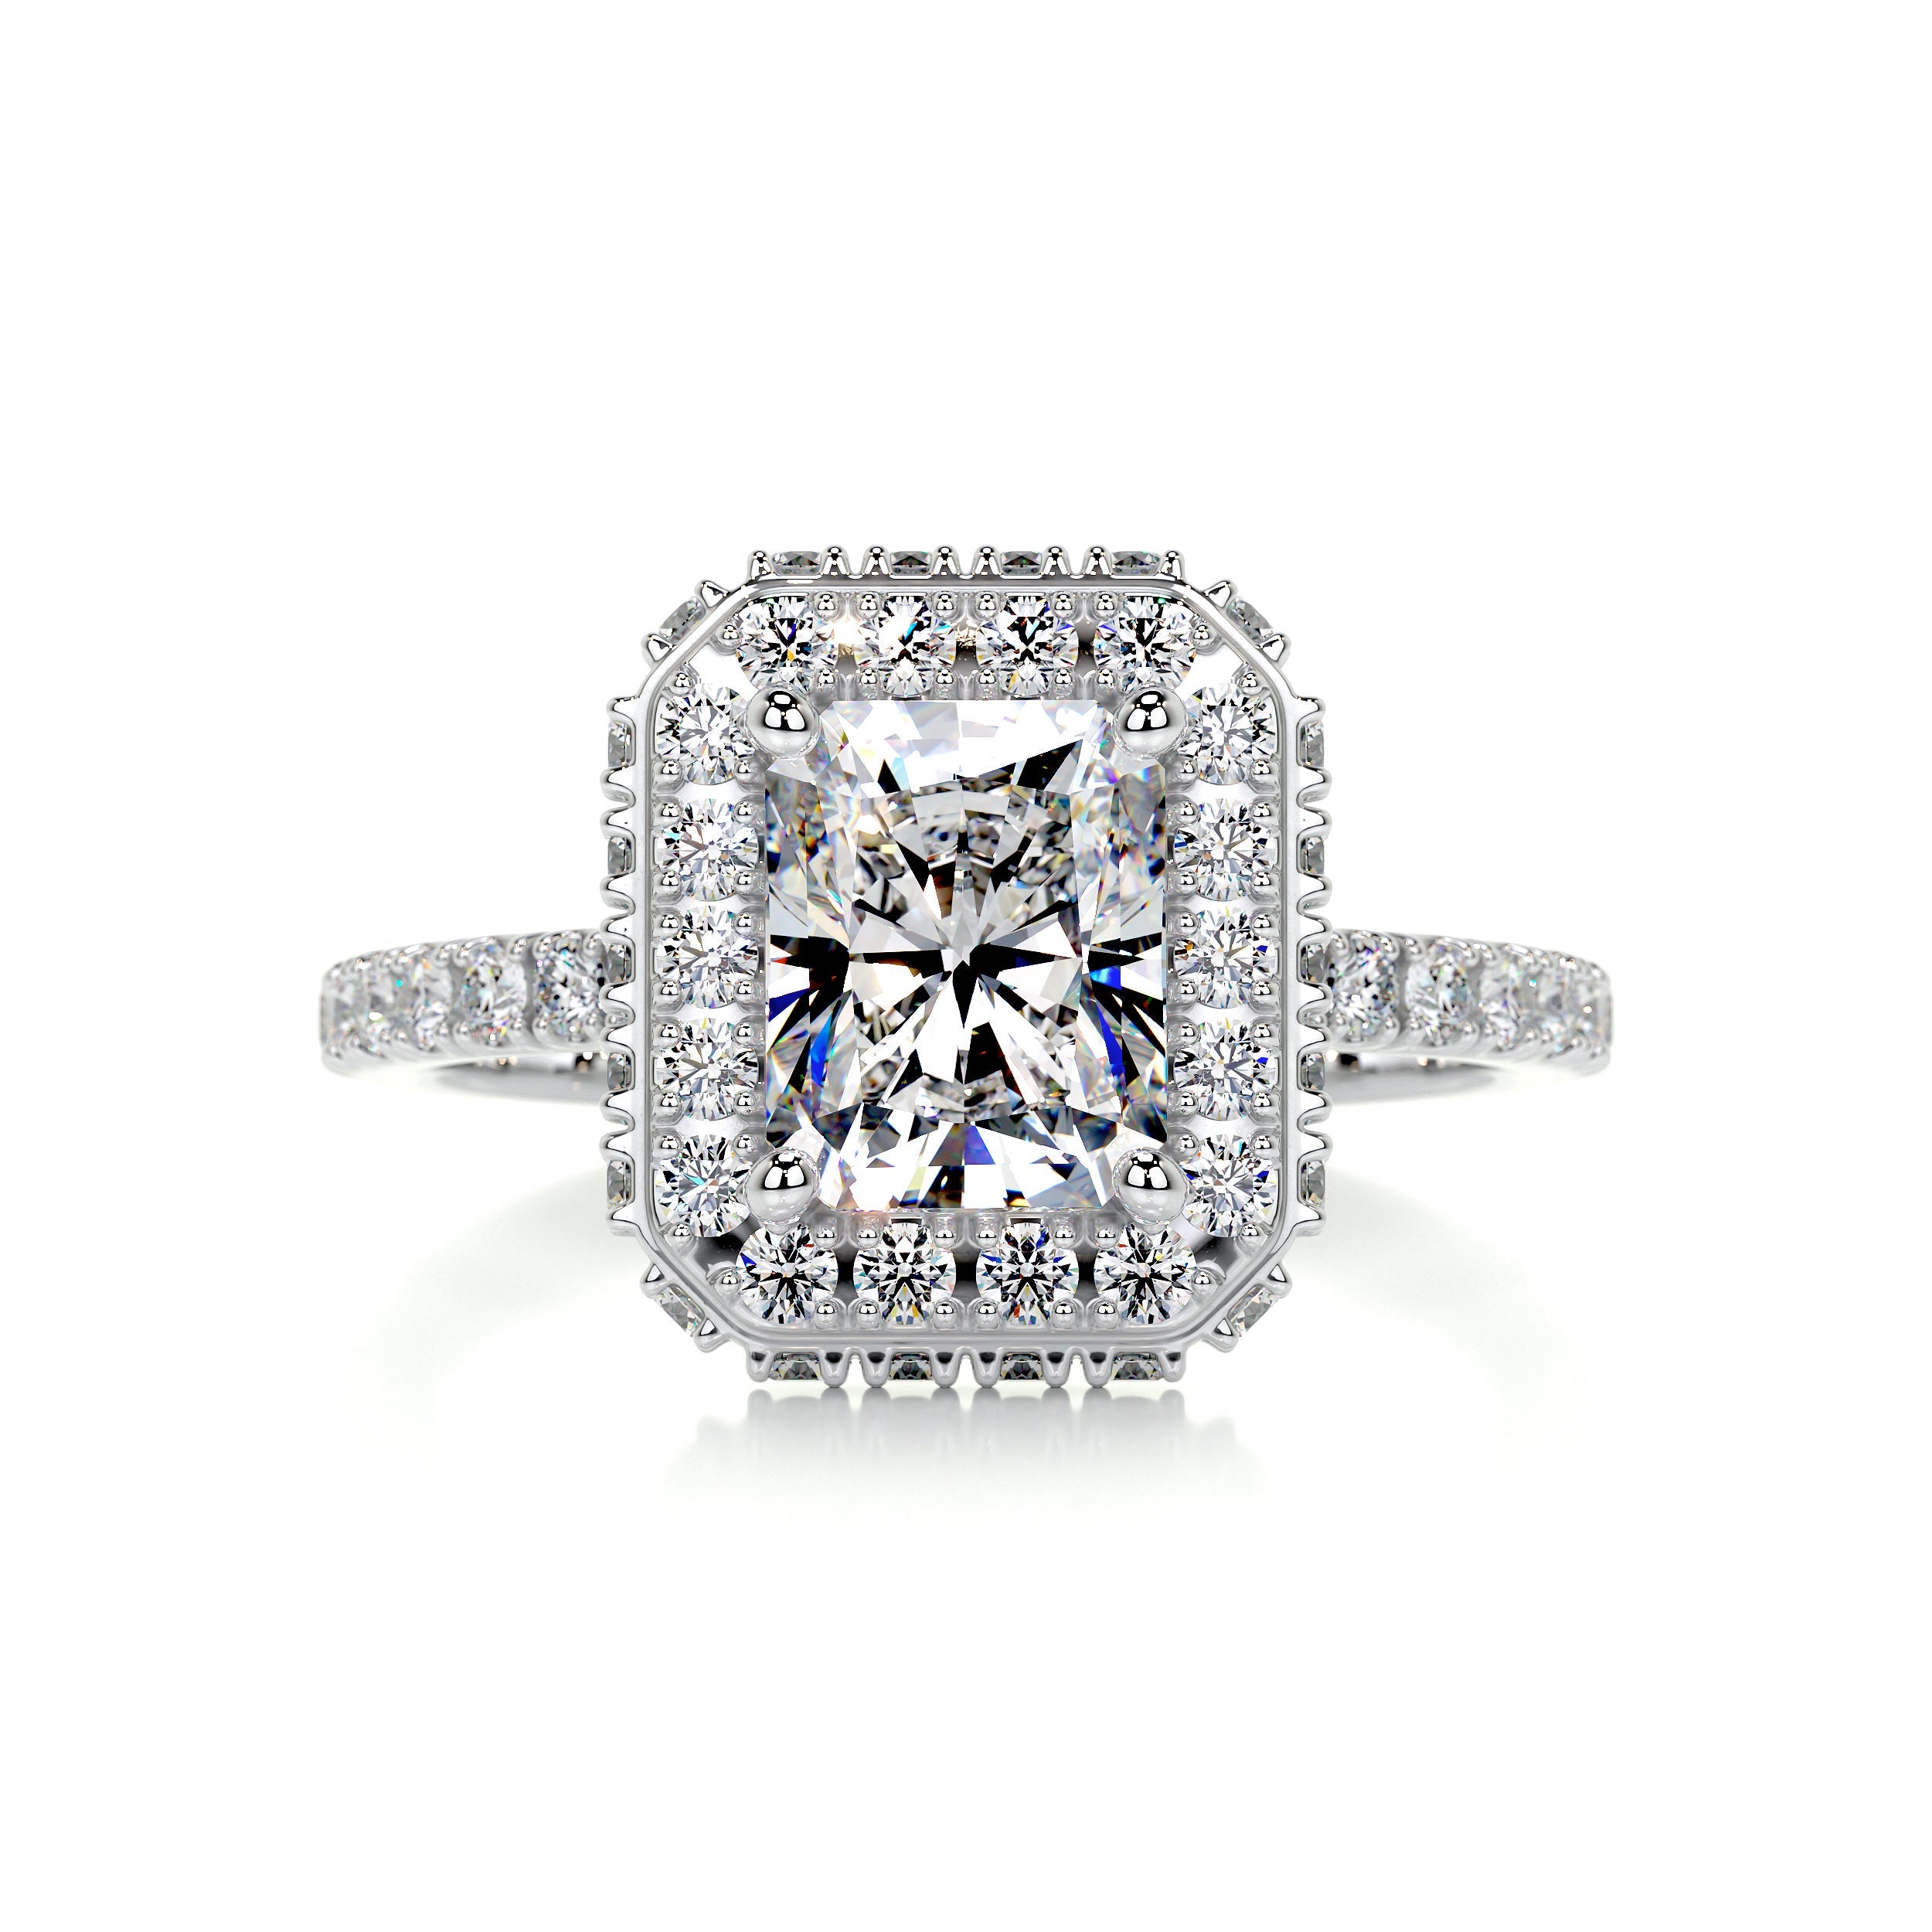 Lana Moissanite & Diamonds Ring   (2.5 Carat) -18K White Gold